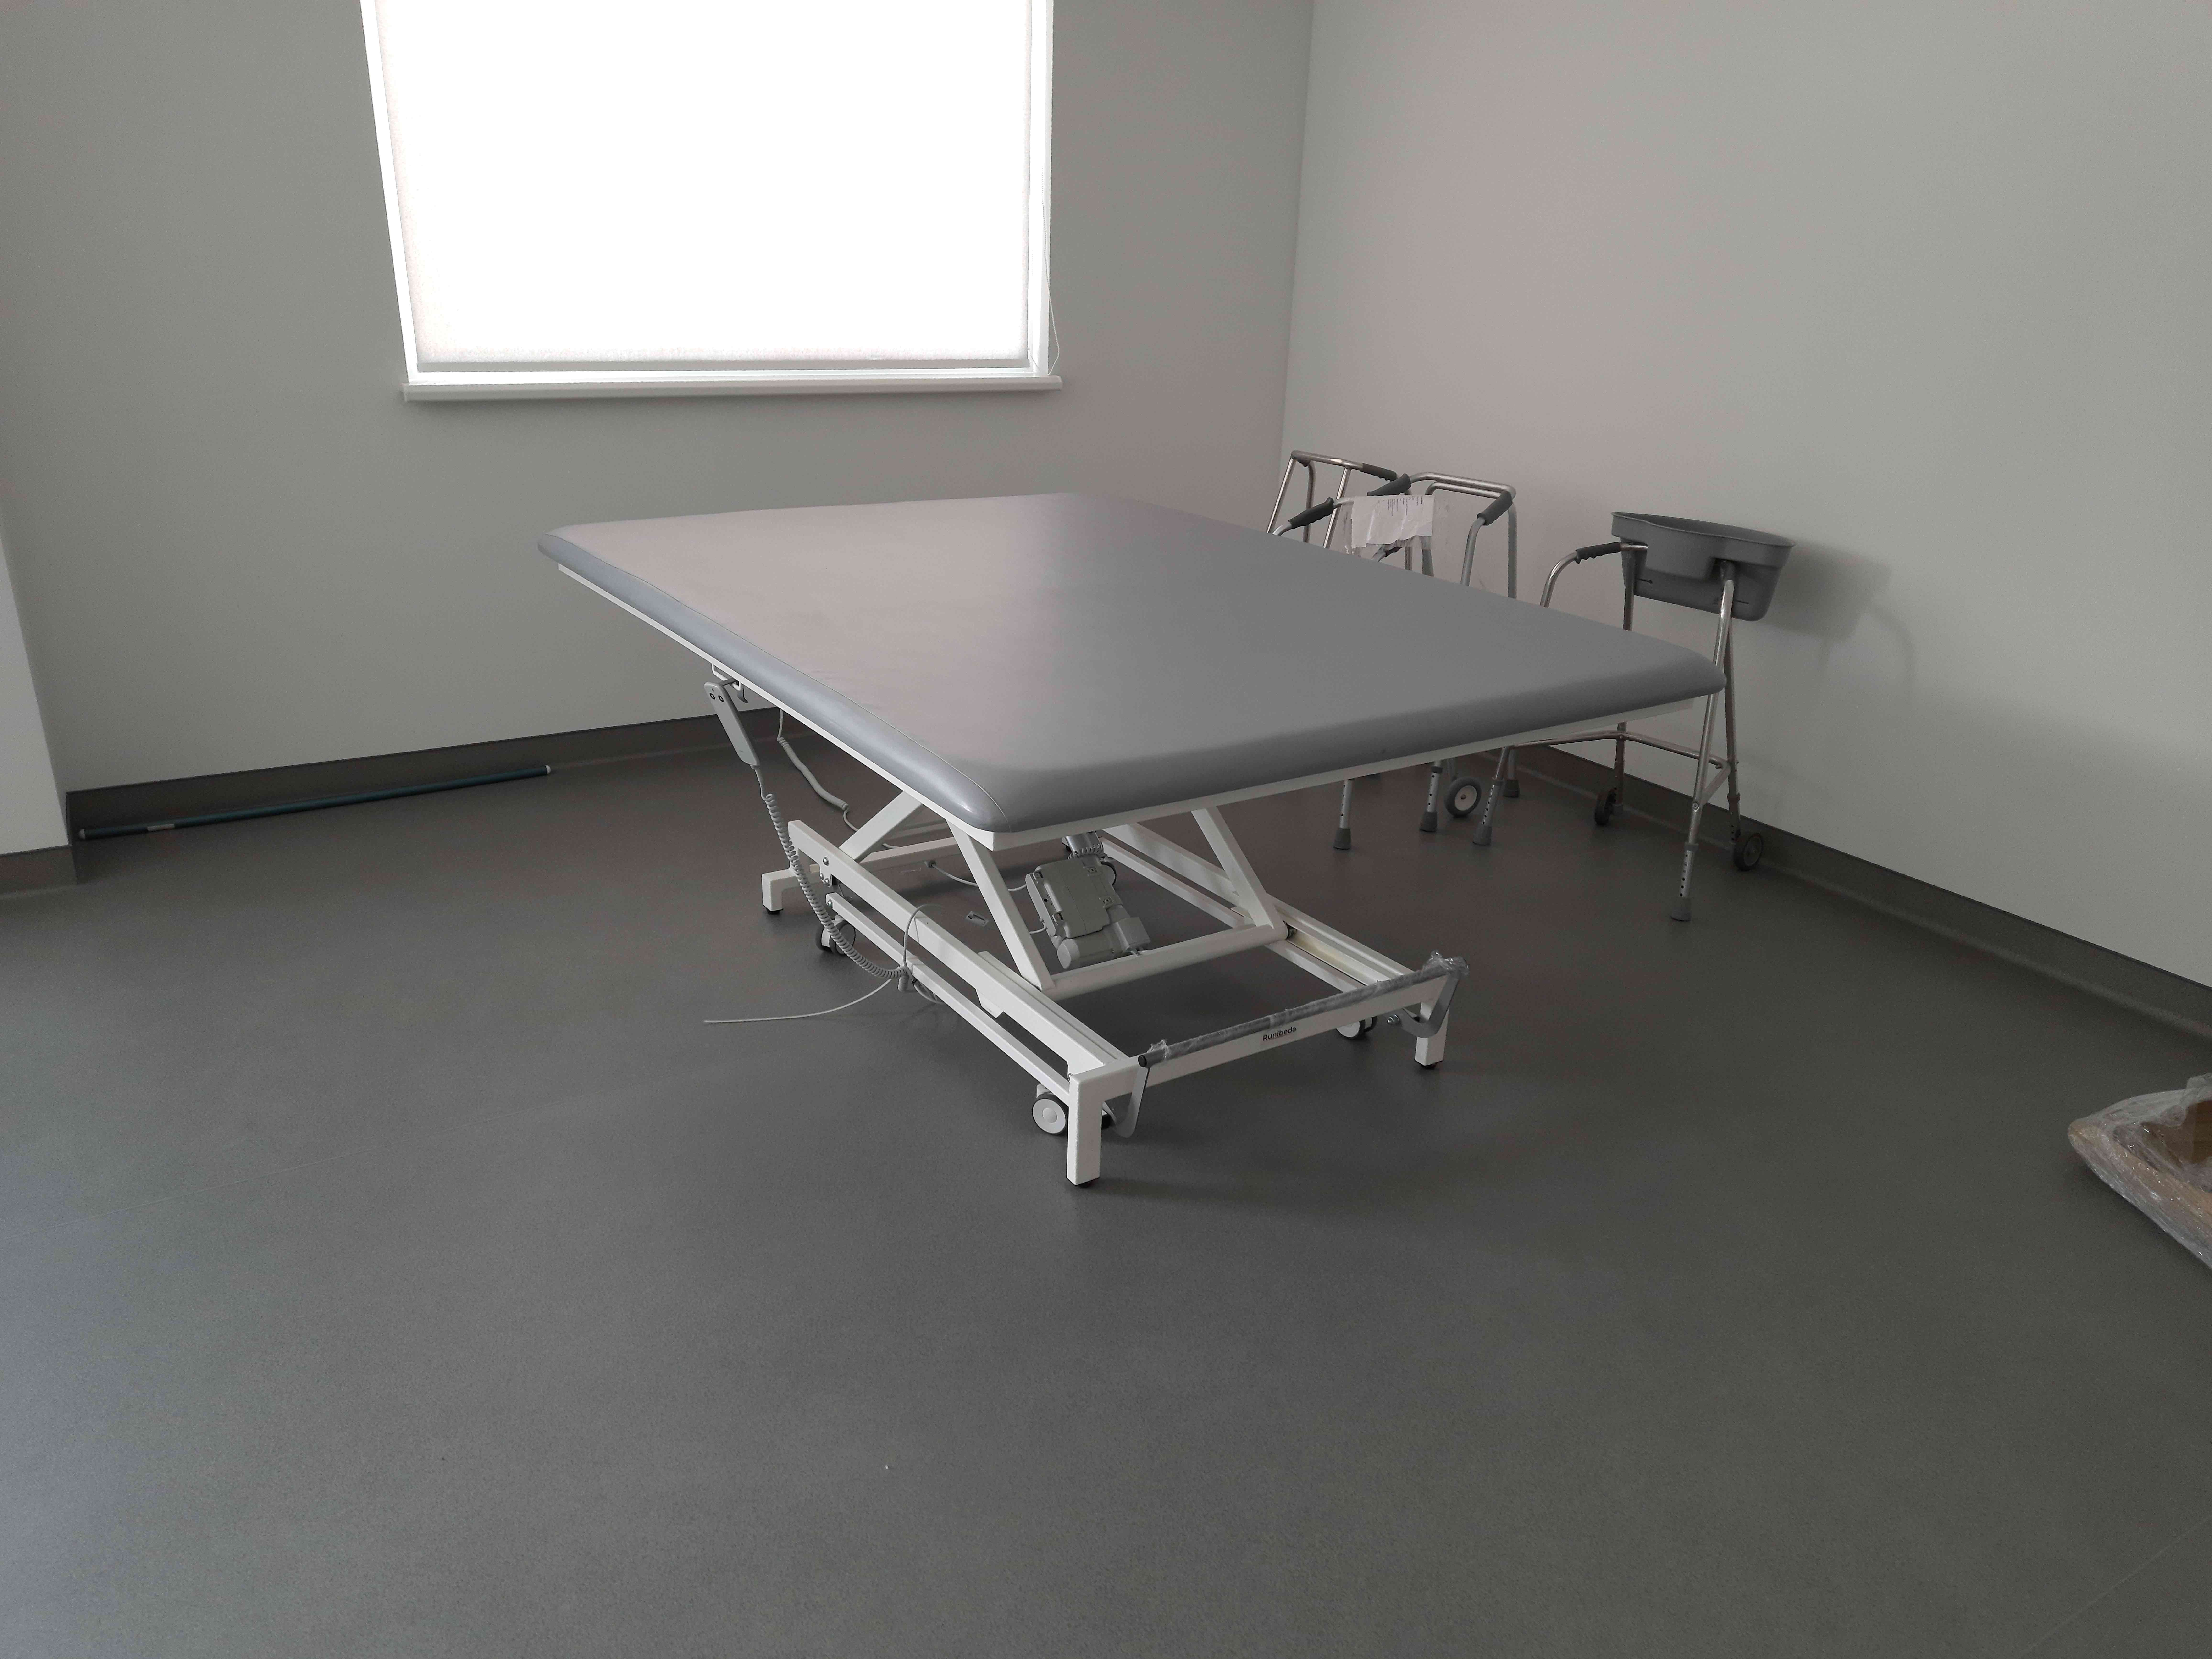 Реабилитационные столы для терапии Войта-Бобата